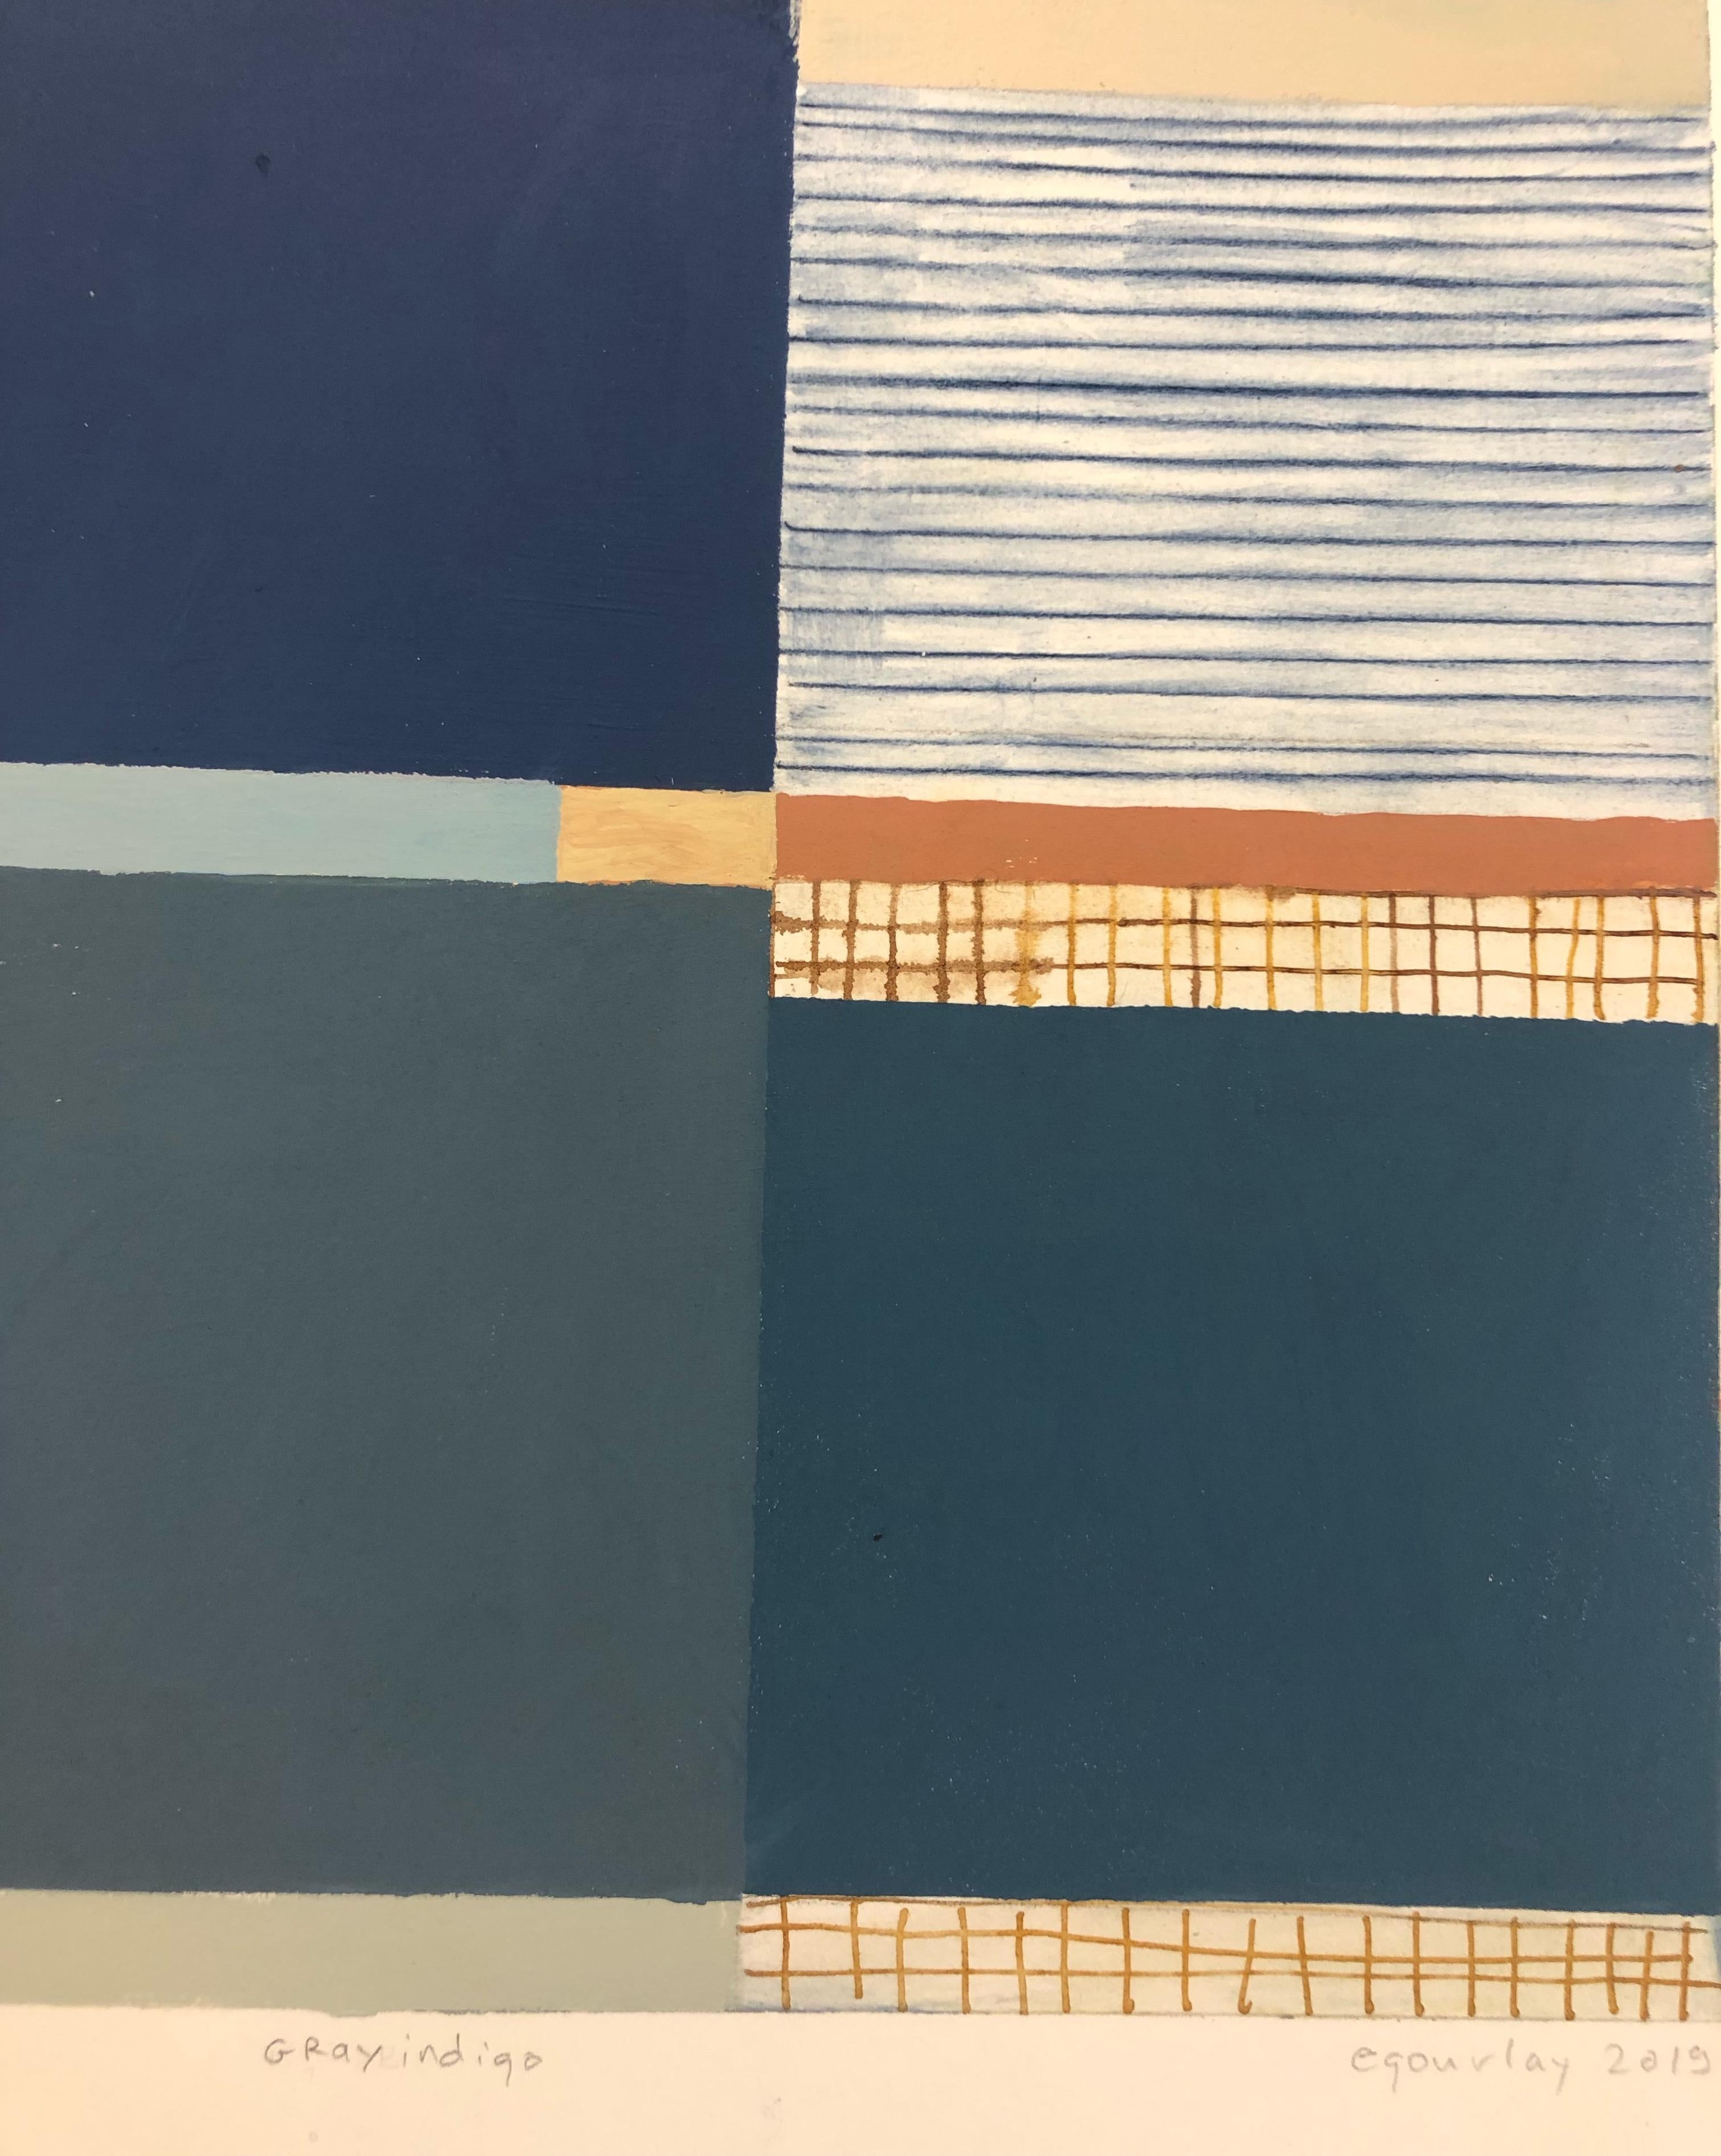 In diesem abstrakten Gemälde von Elizabeth Gourlay in Gouache und Tusche auf Papier heben sich saubere und präzise, sorgfältig angeordnete Streifen und Farbblöcke in tiefem Indigo, Blau, sanftem Grün und sattem Gelb und Orange lebendig und dynamisch